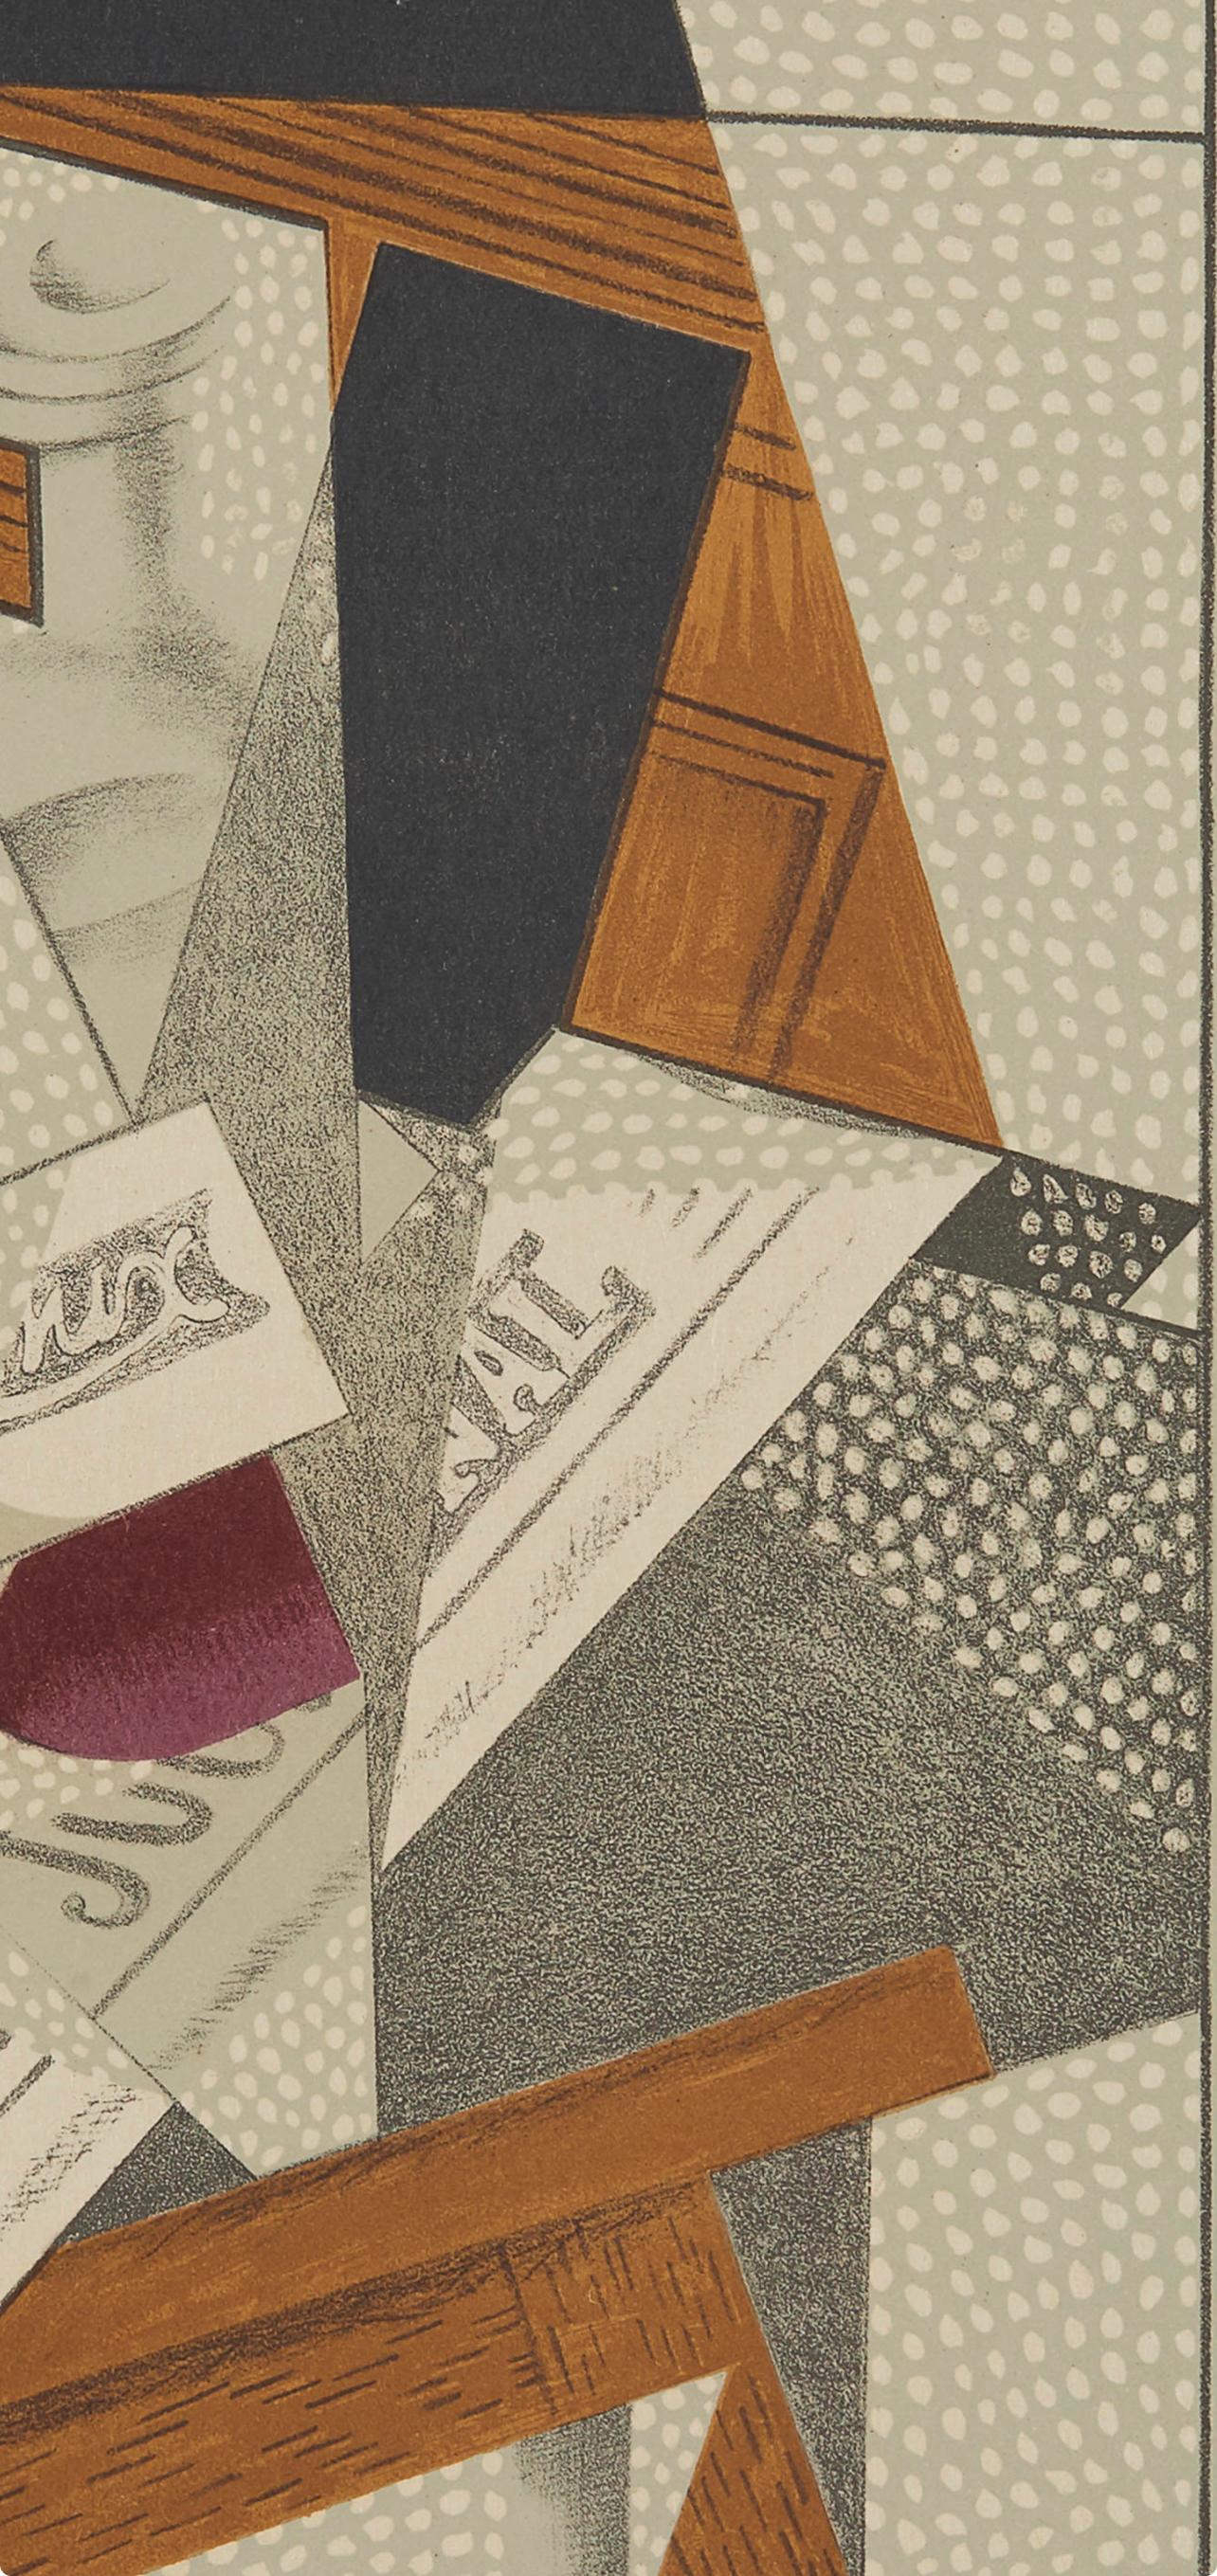 Gris, Bouteille (Kahnweiler 1969), Au Soleil du Plafond (nach) – Print von Juan Gris